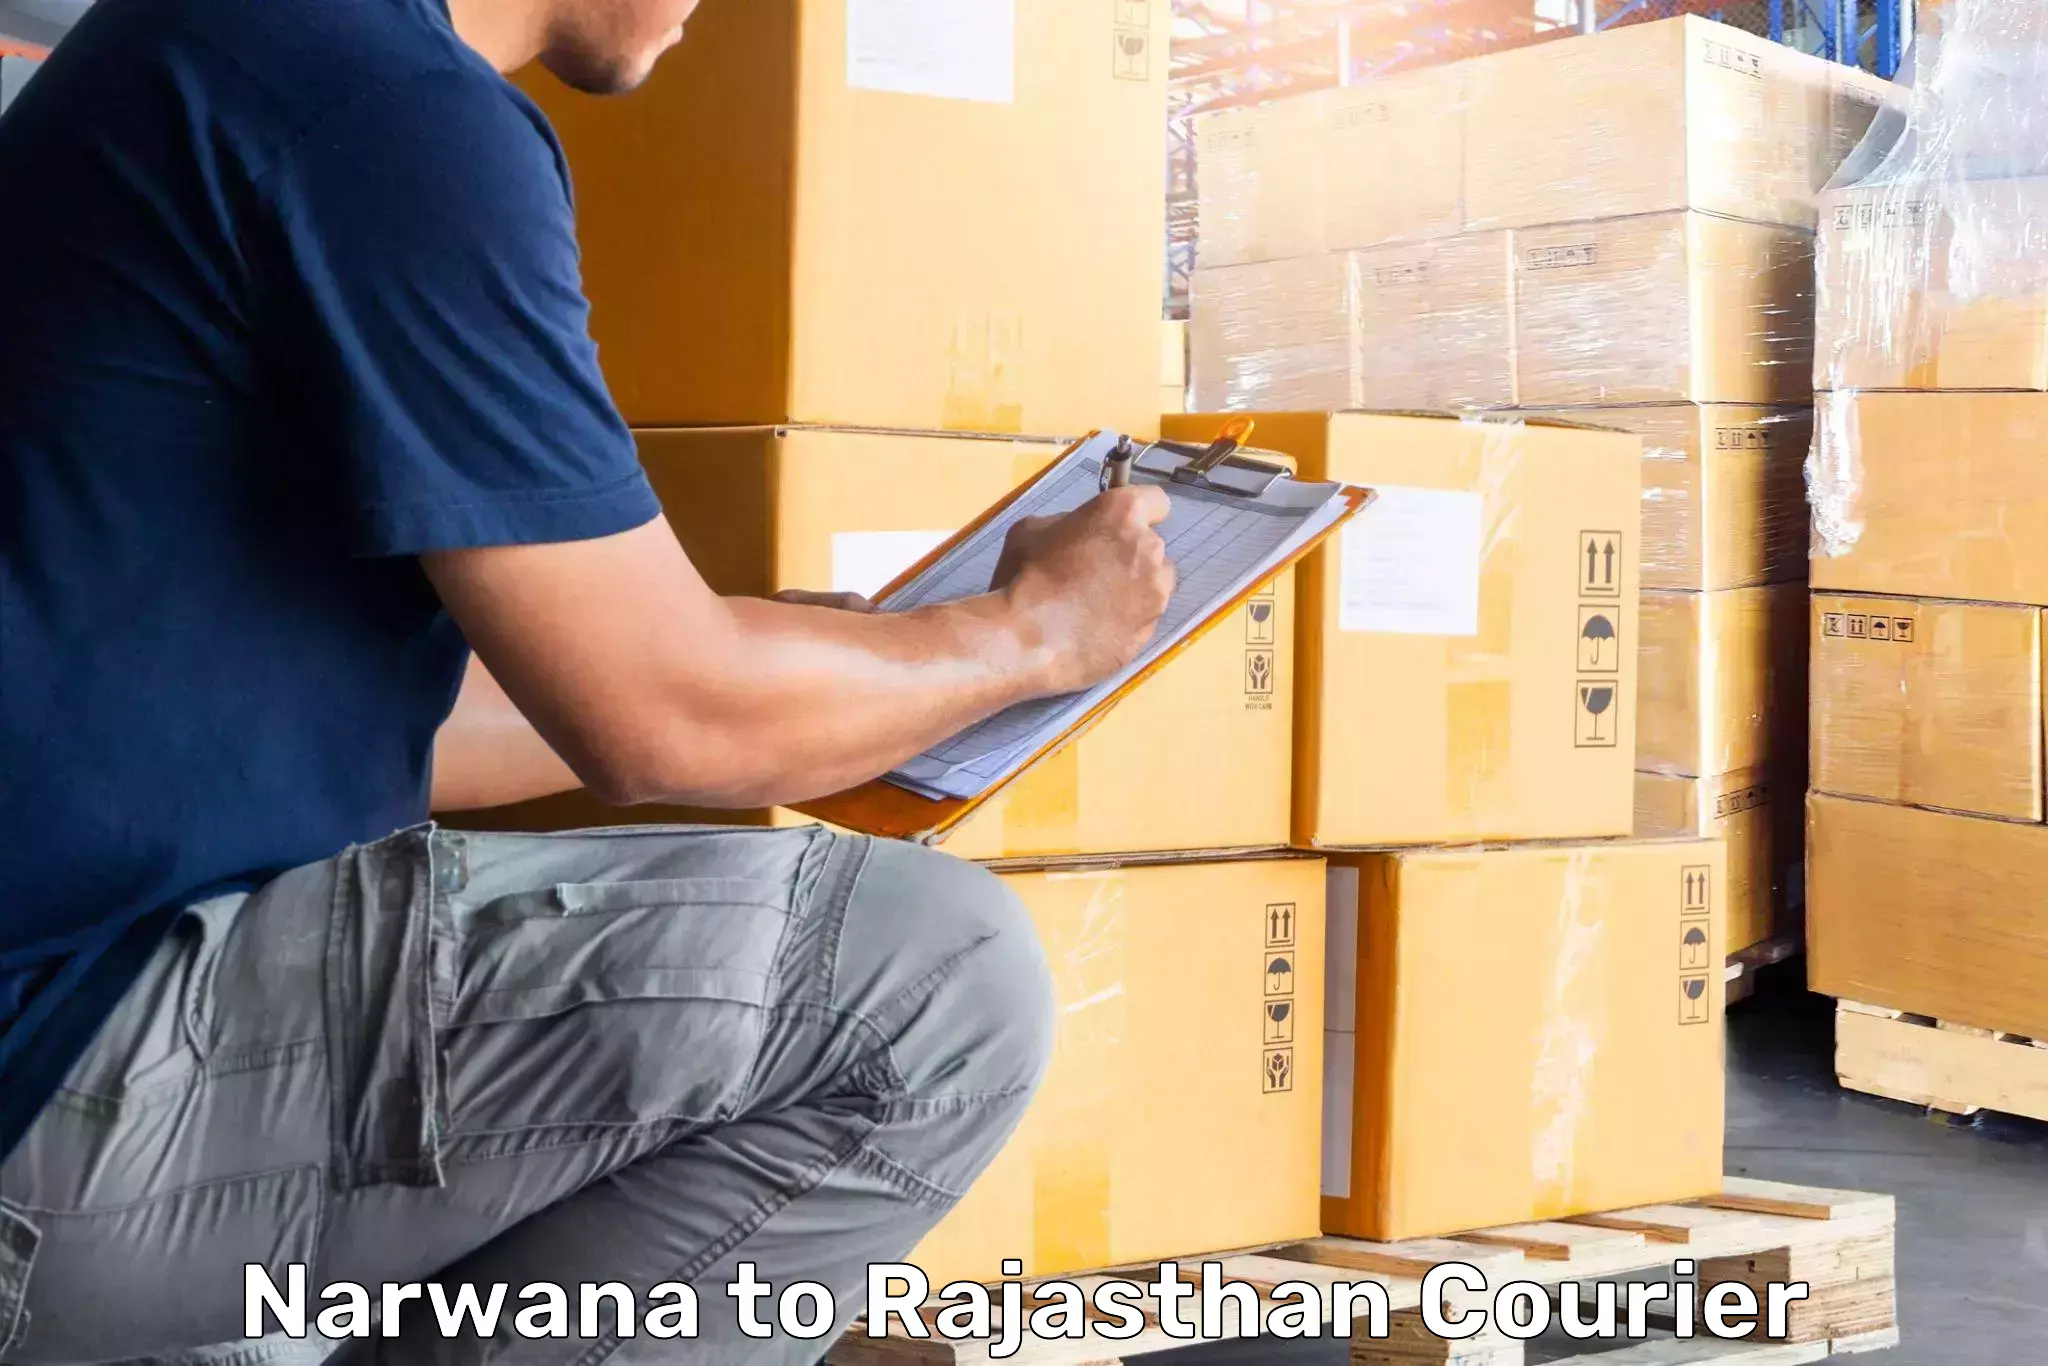 Luggage delivery news Narwana to Yathalakunta